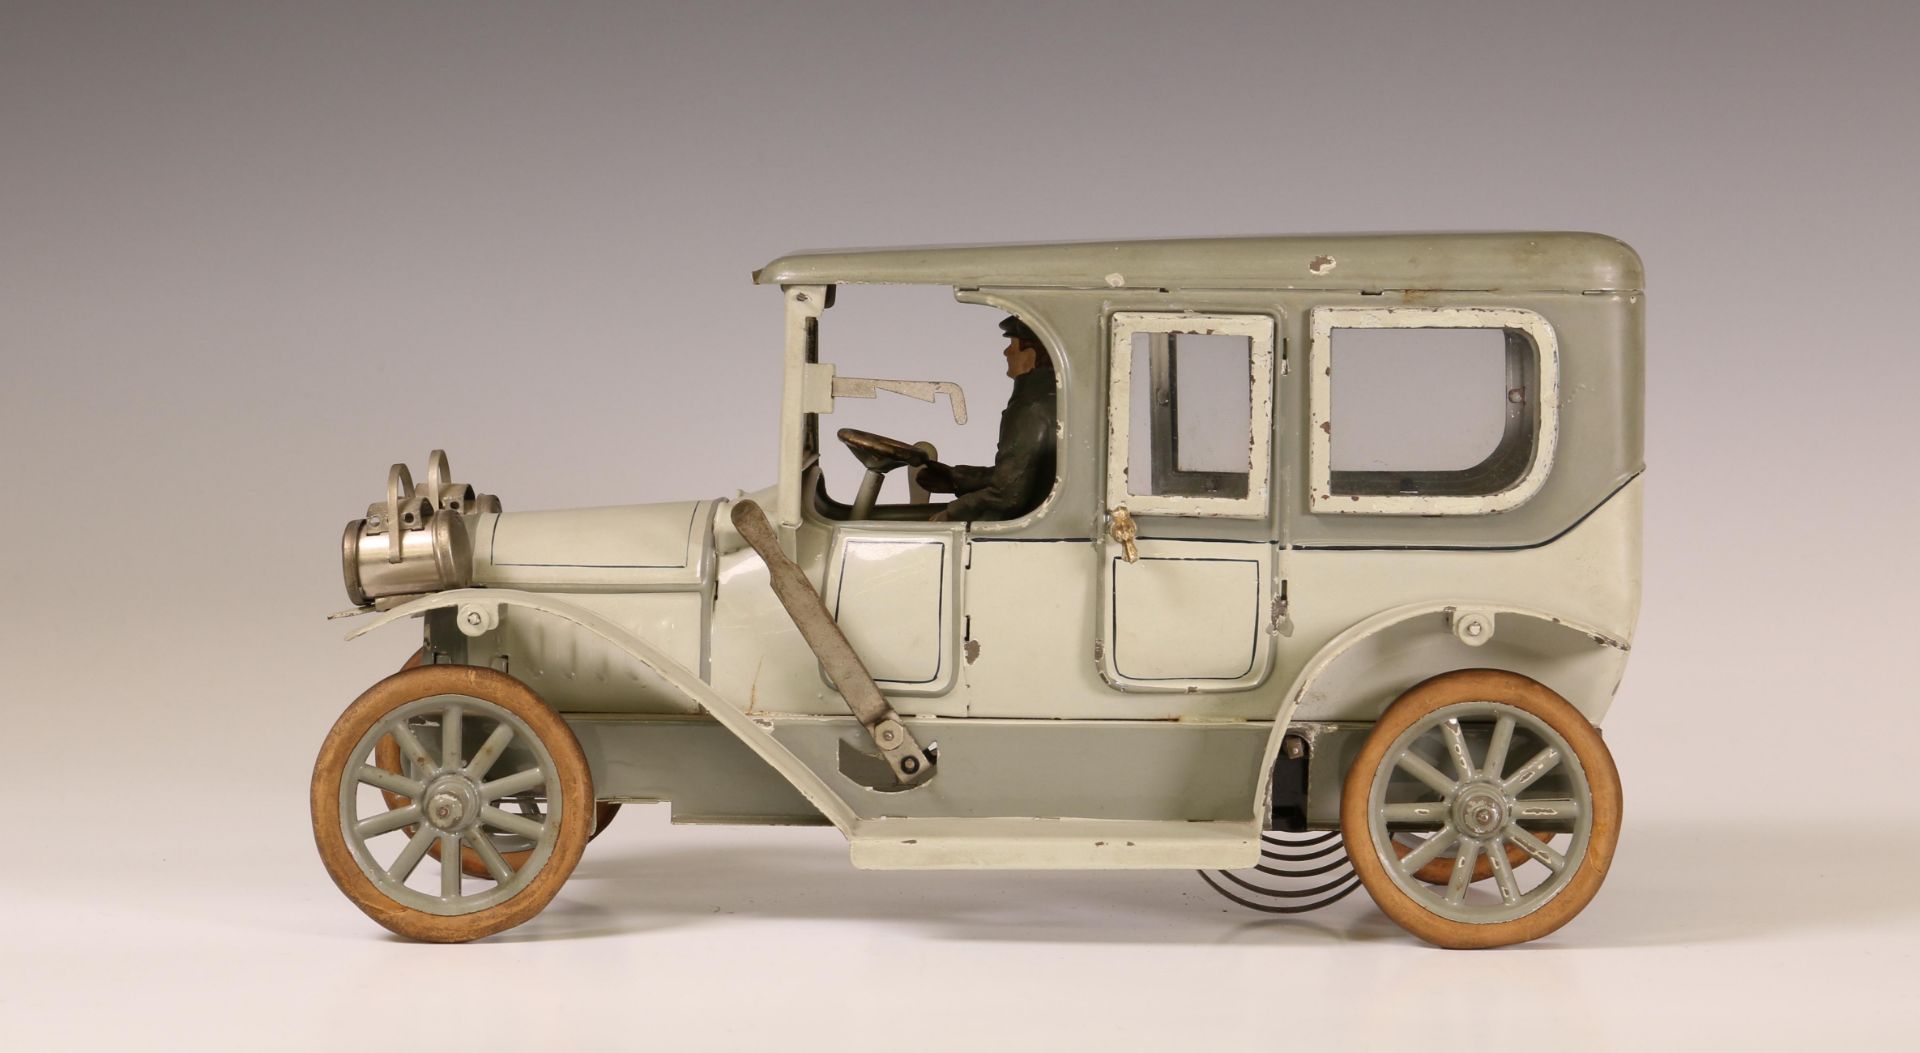 Duitsland, grijze limousine met chauffeur, mogelijk Karl Bub, ca. 1915. - Bild 7 aus 8